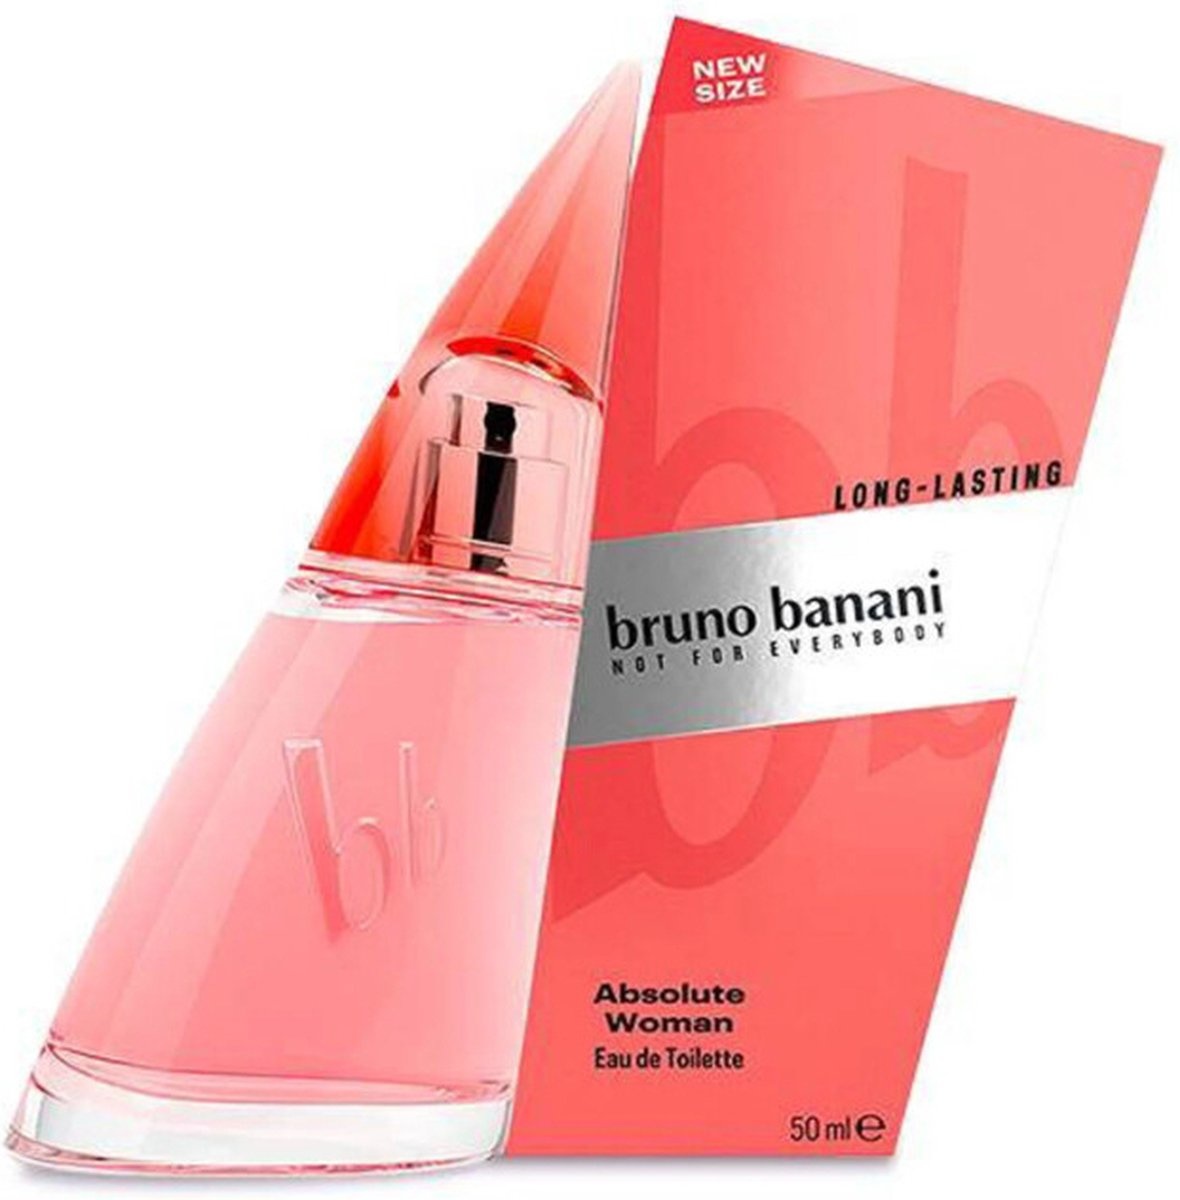 Bruno Banani Absolute Woman Eau de Toilette Vaporisateur - 50 ml - Emballage endommagé